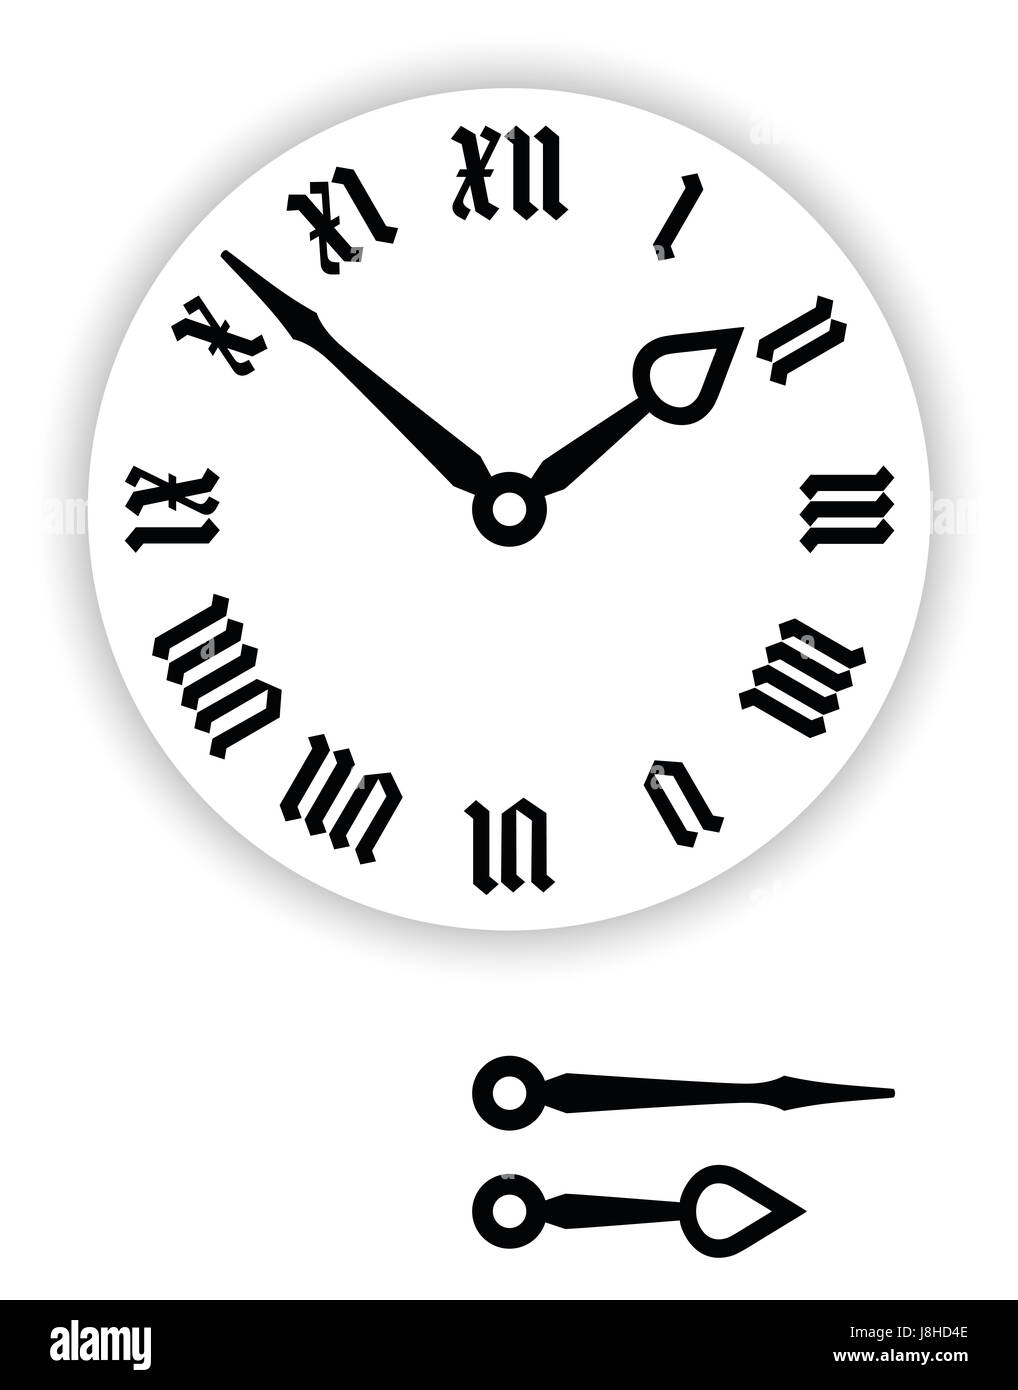 Fraktur numeri romani orologio. Parte di orologio analogico con puntatori di nero. Quadrante con numeri blackletter, anche piccolissima gotico o Textura. Foto Stock